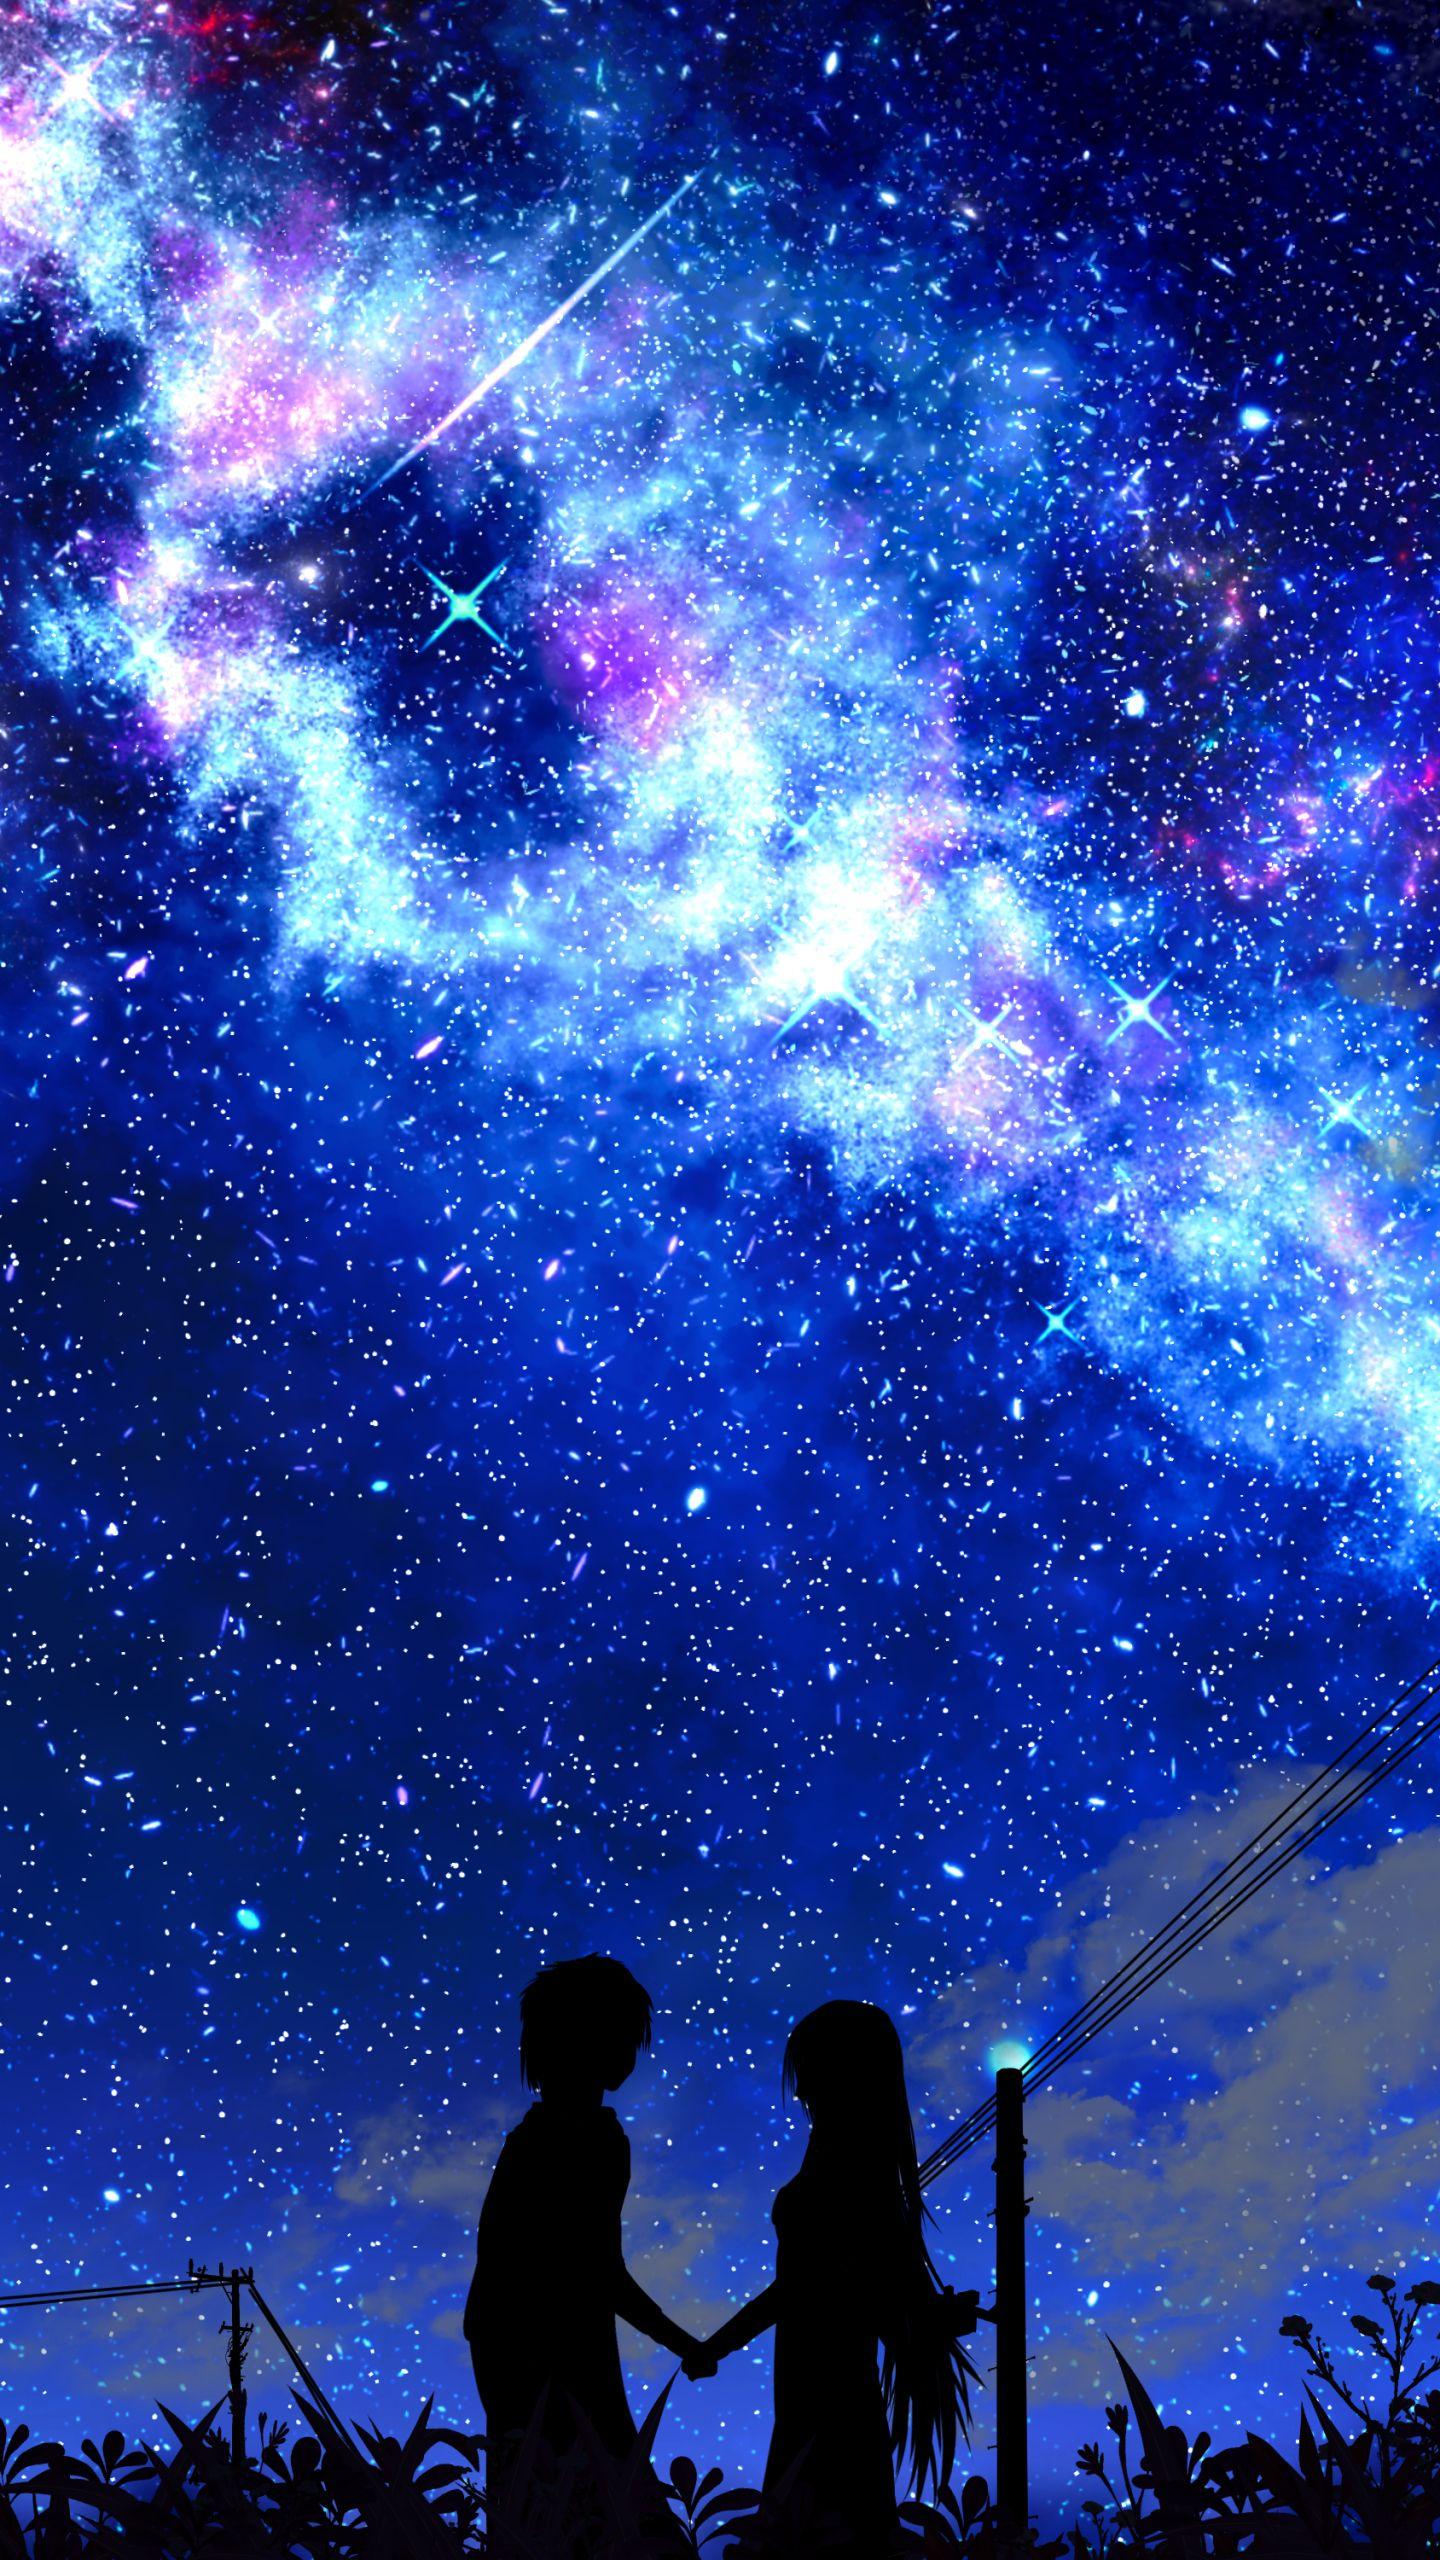 Galaxy Anime Boy wallpaper với các hiệu ứng không gian trông thật sự đẹp mắt. Bộ sưu tập các hình ảnh liên quan đầy sáng tạo, cho phép bạn tìm thấy hình nền phù hợp với phong cách cá nhân của mình. Hãy để bộ sưu tập này mang đến những khoảnh khắc thư giãn trên màn hình điện thoại của bạn.